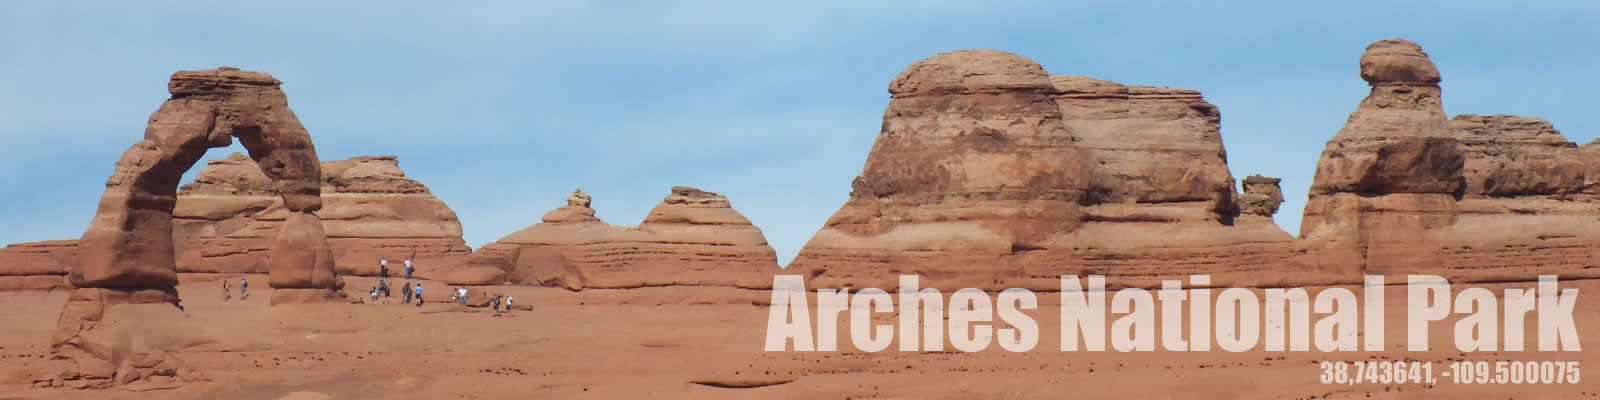 Arches.jpg